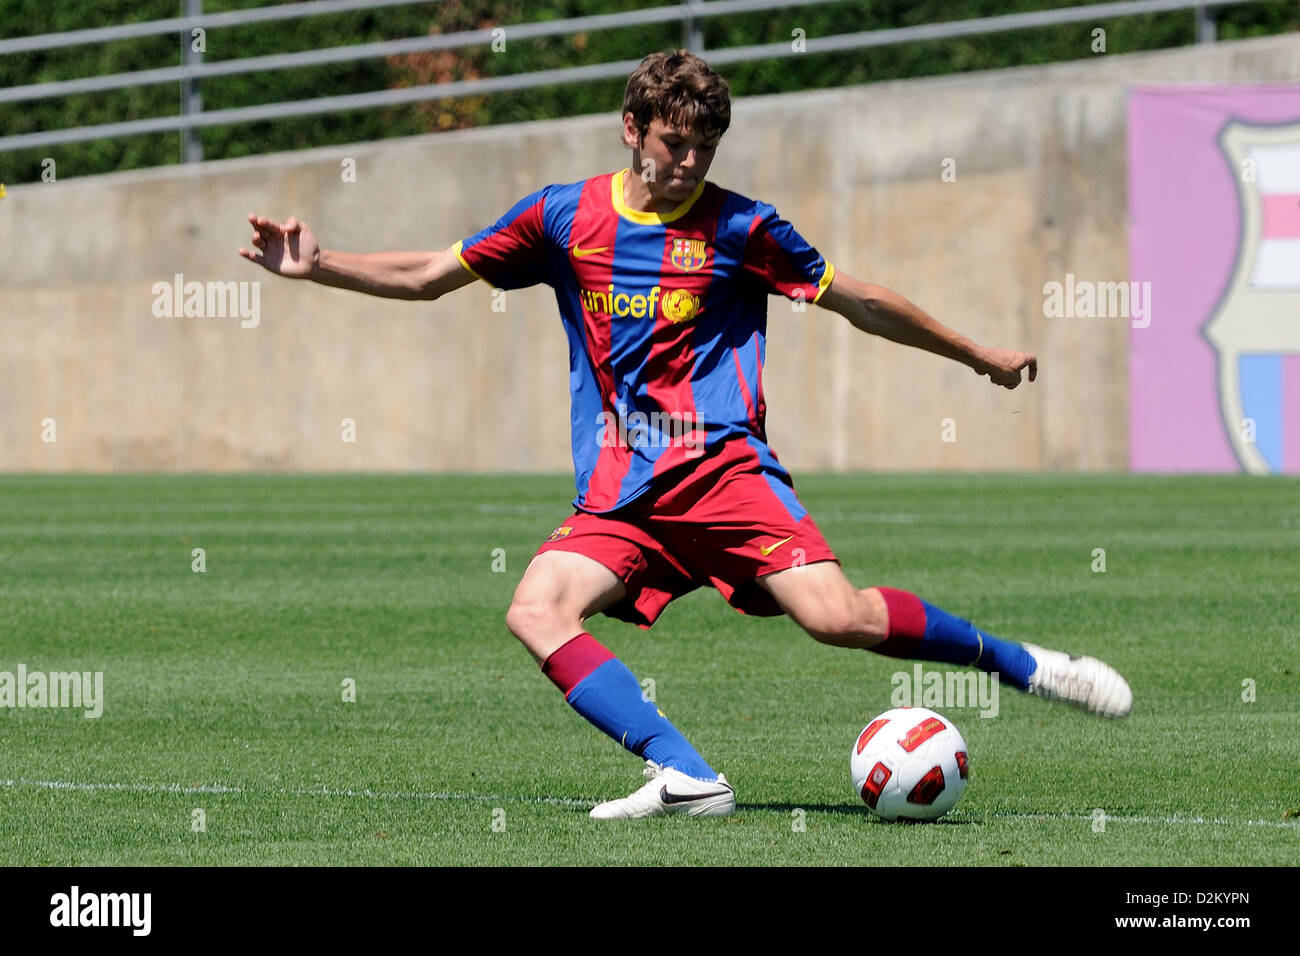 Barcellona, Spagna - 15 Maggio: Sergio Ayala gioca con F.C Barcellona squadra giovanile contro U.D Las Palmas il 15 maggio 2011. Foto Stock